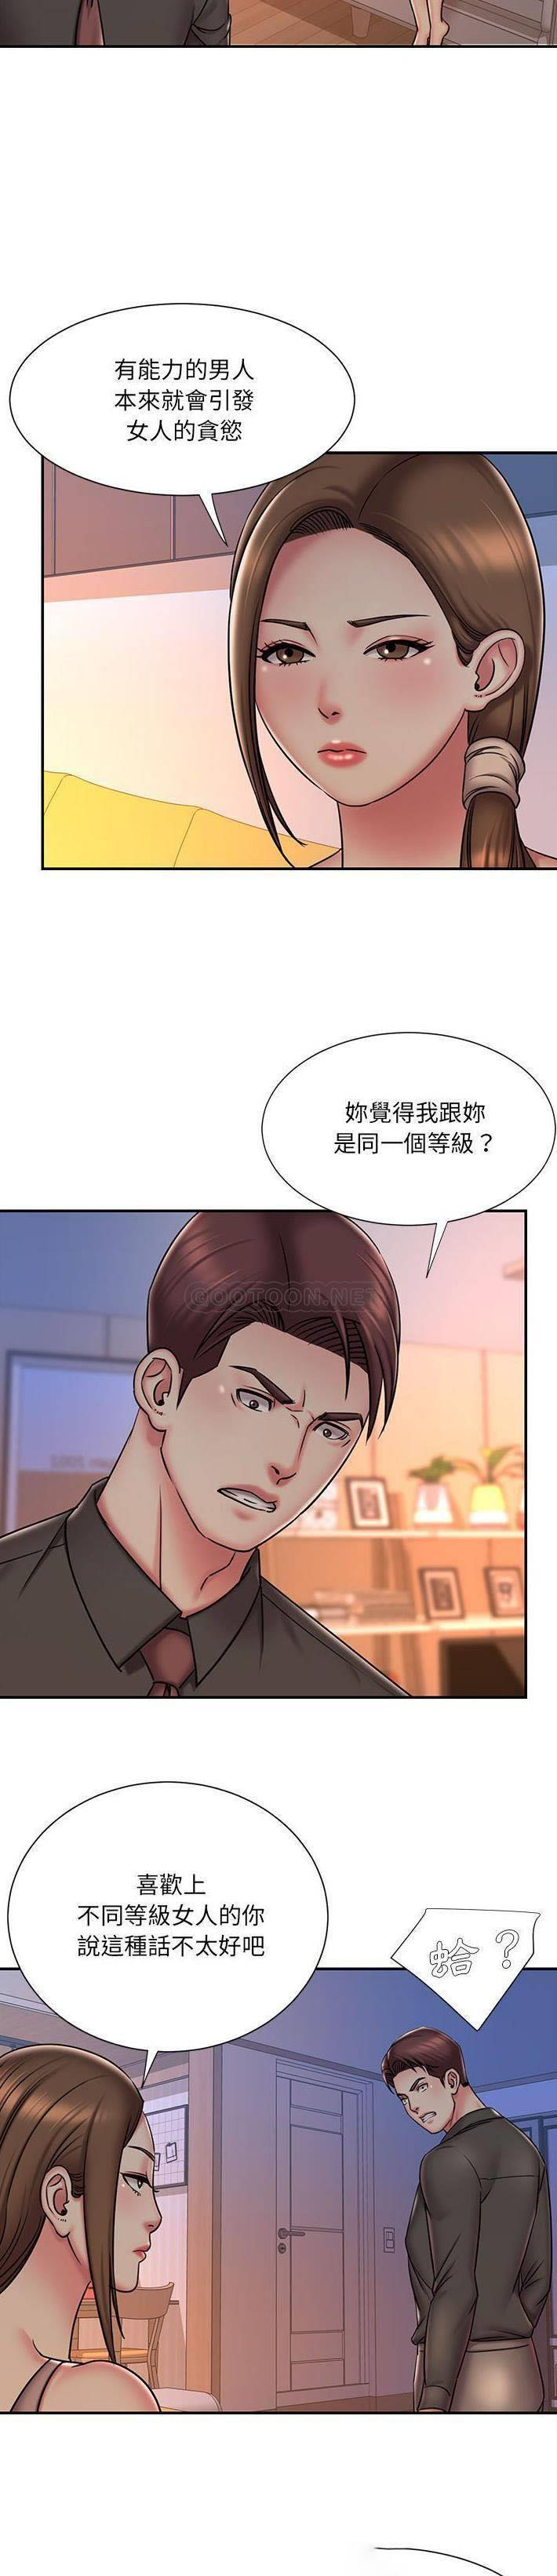 韩国污漫画 被拋棄的男人(男孩沒人愛) 第41话 13